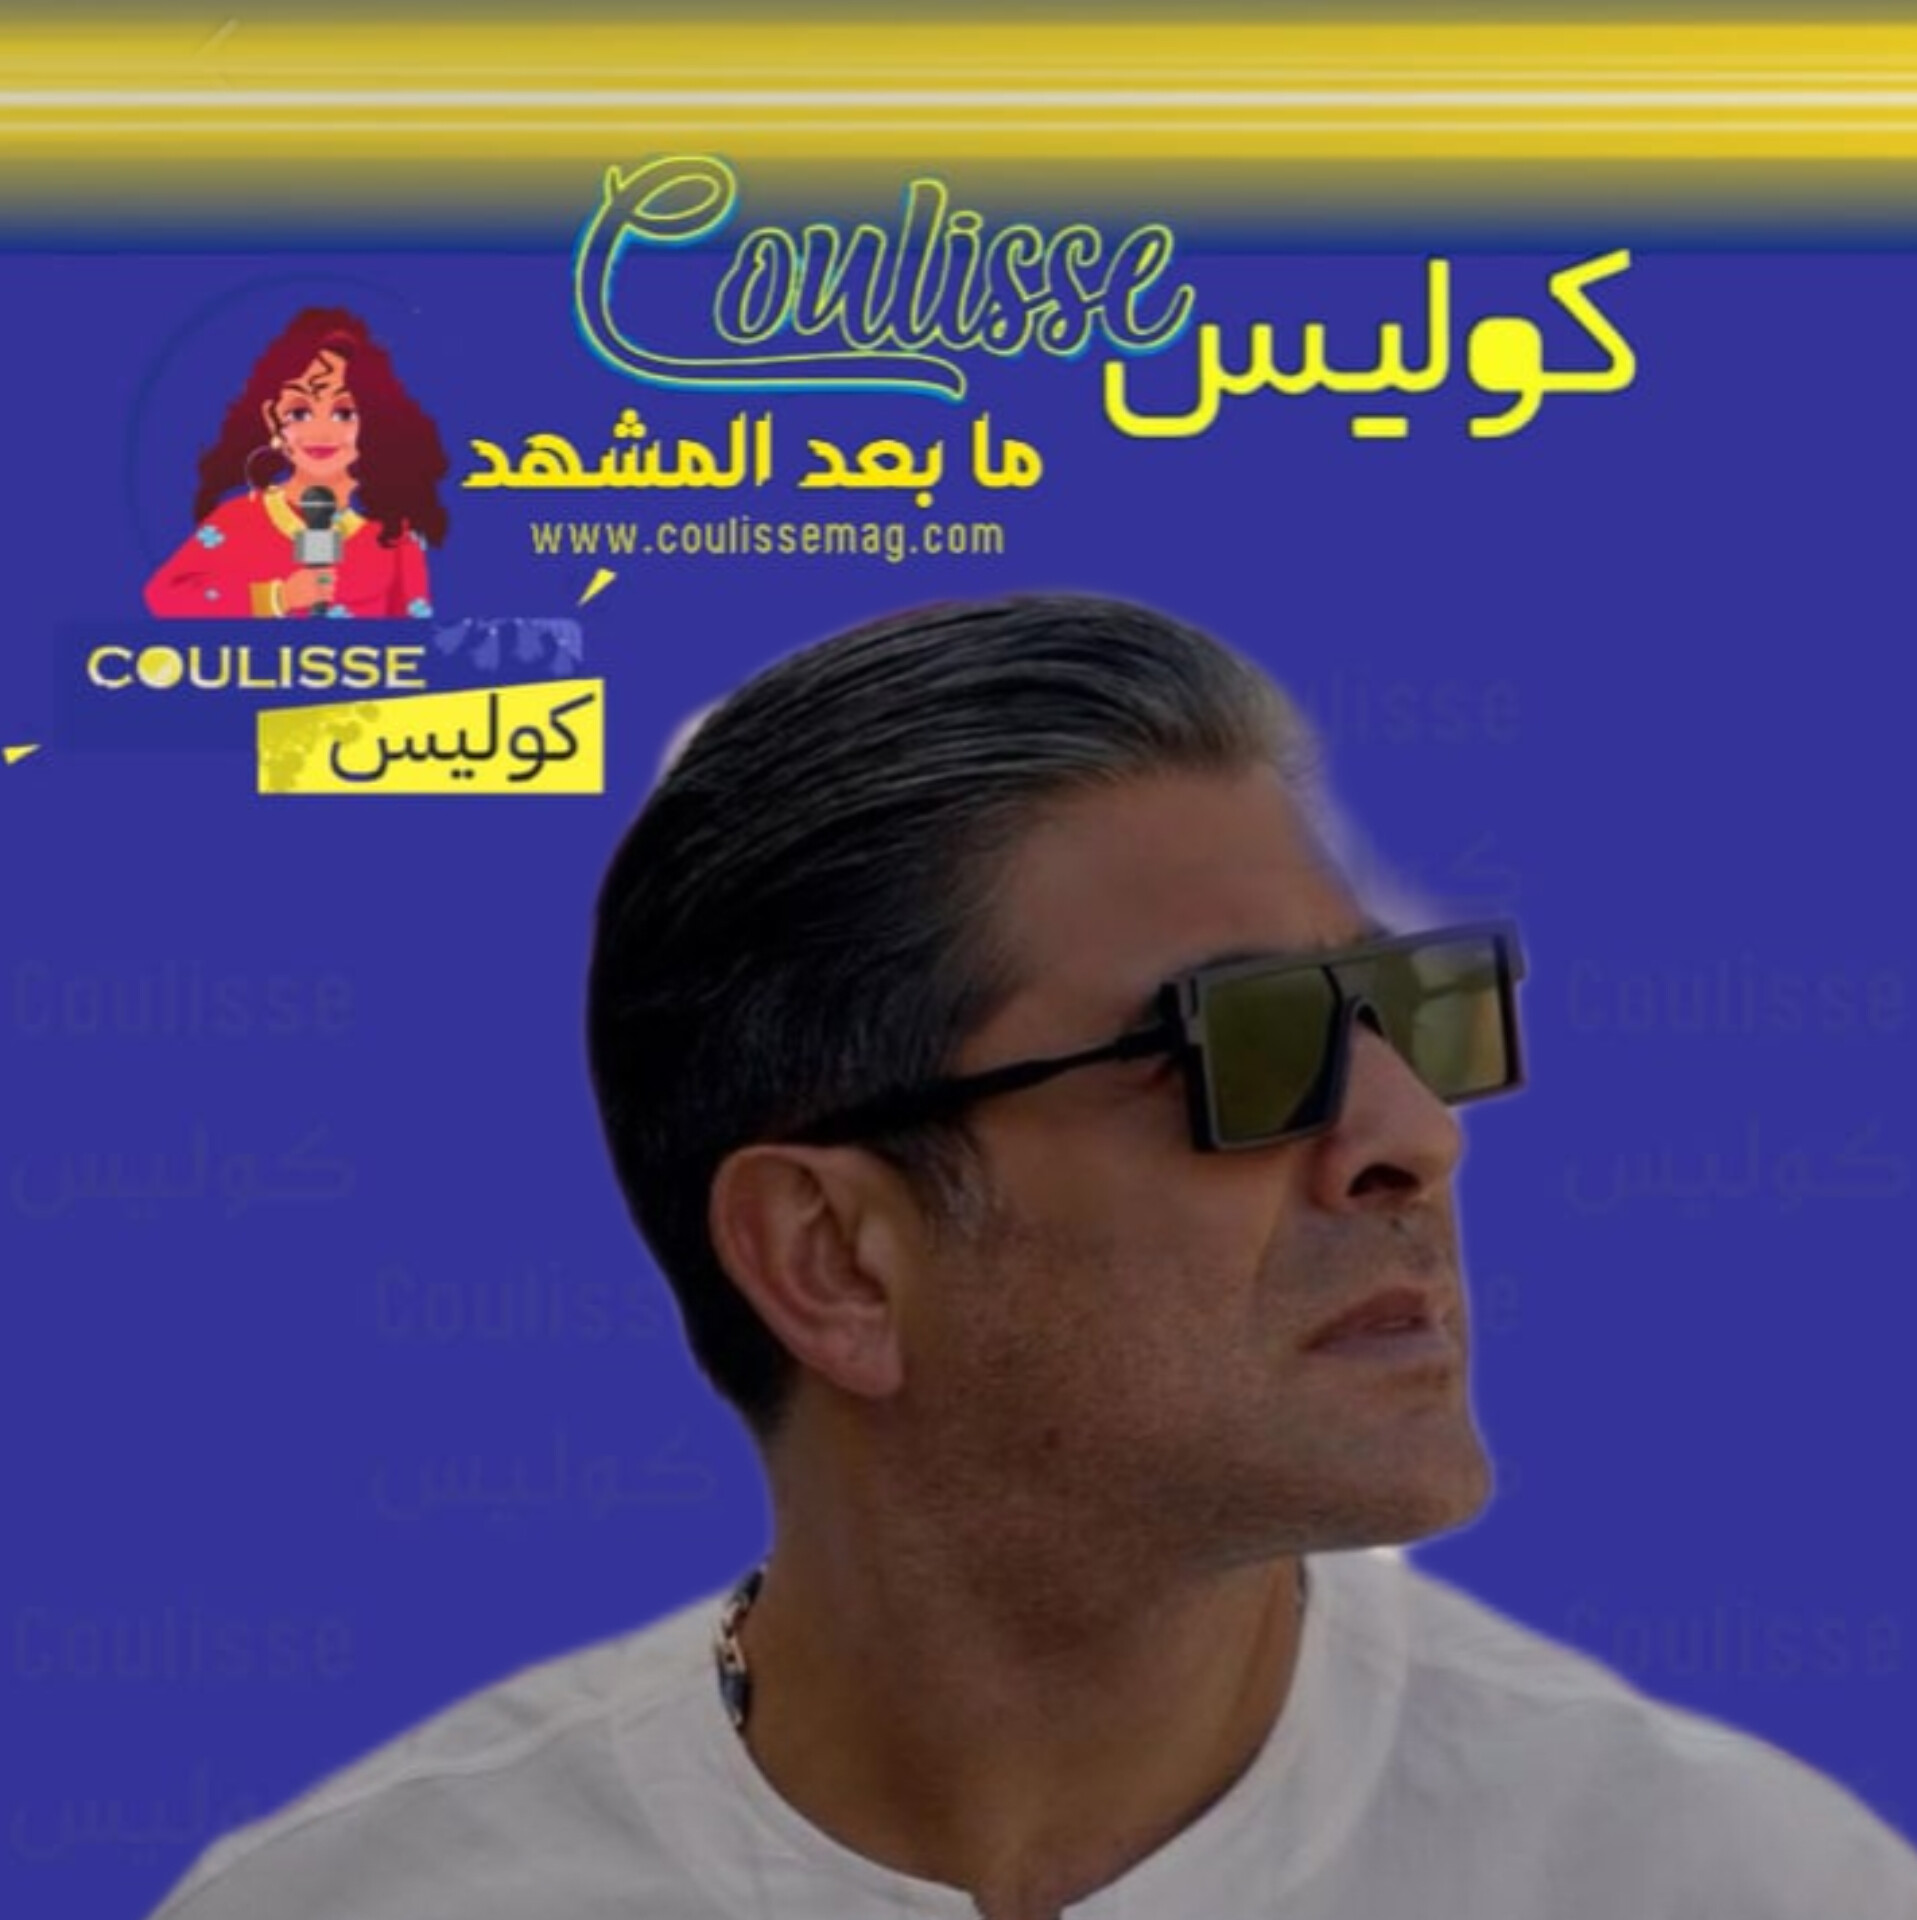 وائل كفوري يجمع قلوب العشّاق في “حلو الحب”! – فيديو